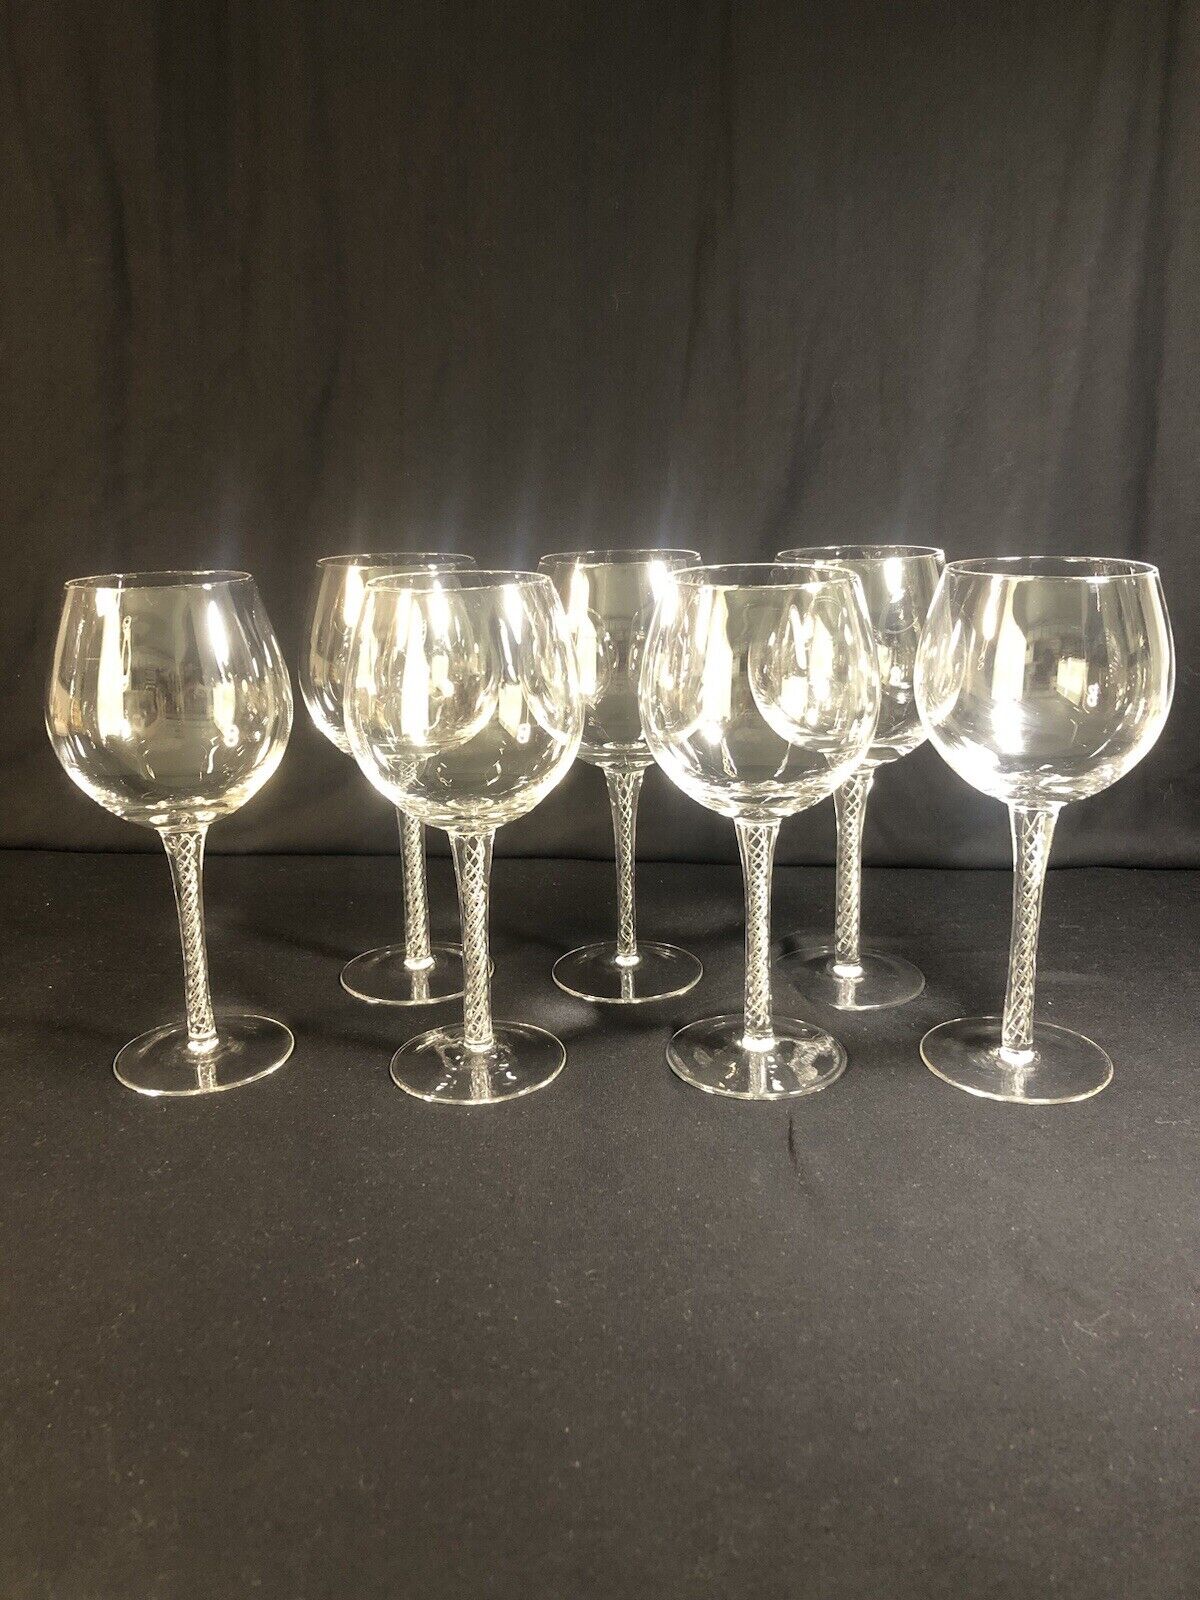 VTG Airtwist Stem Crystal Glasses Red Wine Goblets Set Of 7 Celtic Vibe